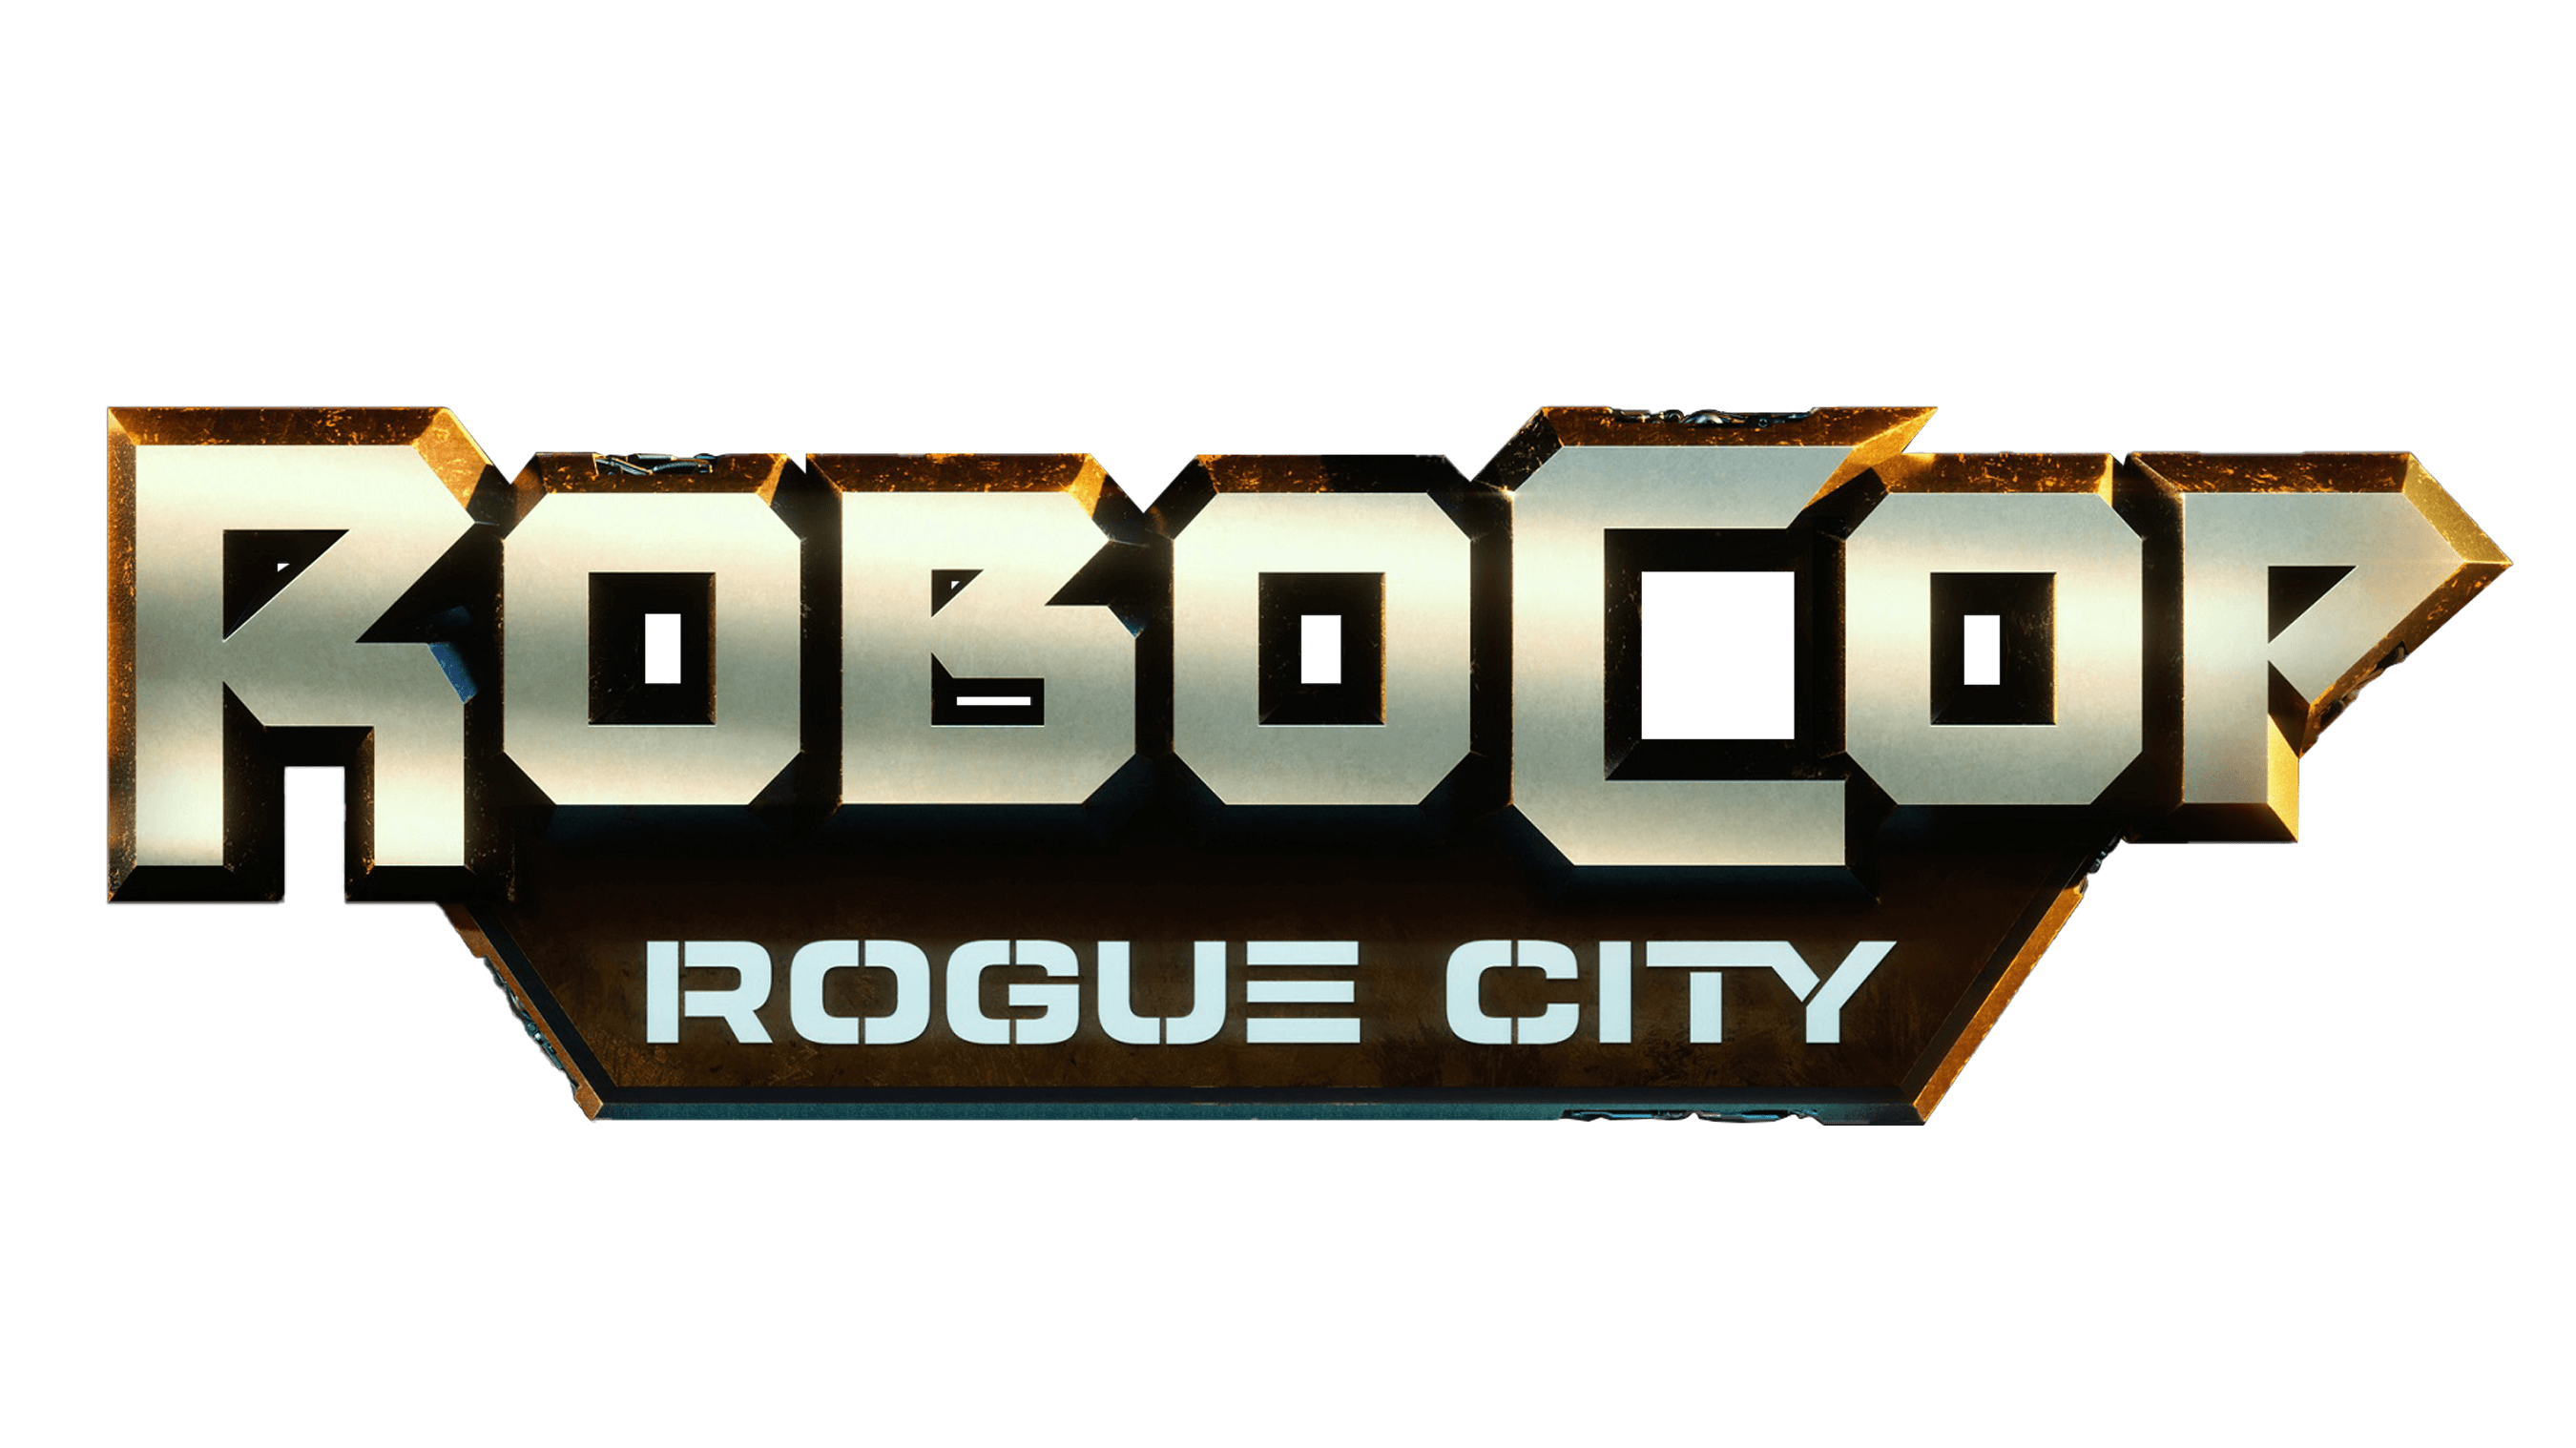 instal the new RoboCop: Rogue City